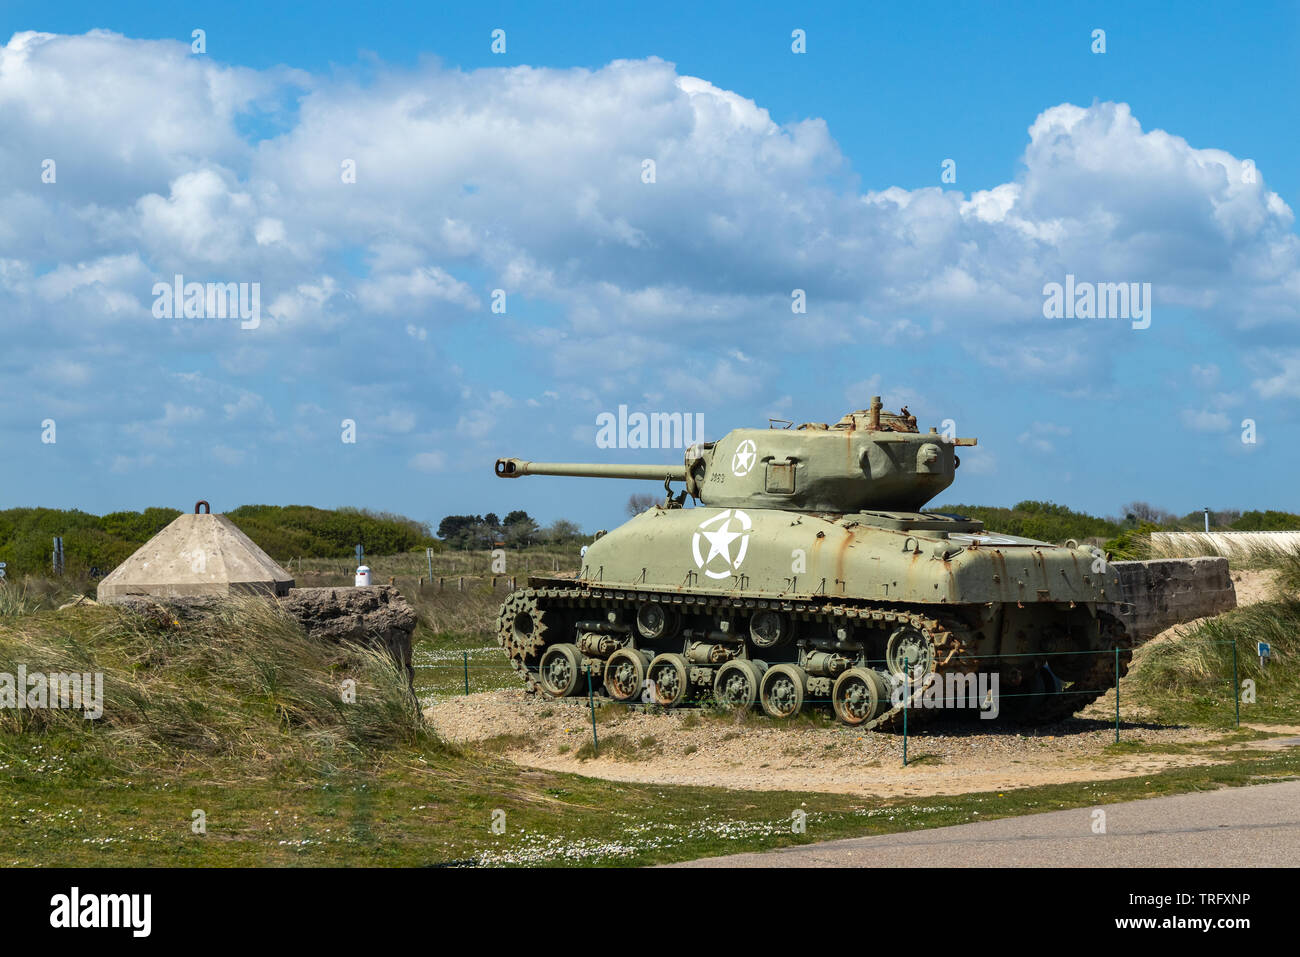 Utah beach, France - May 5, 2019: Sherman tanks at Utah beach in Normandy France. Stock Photo